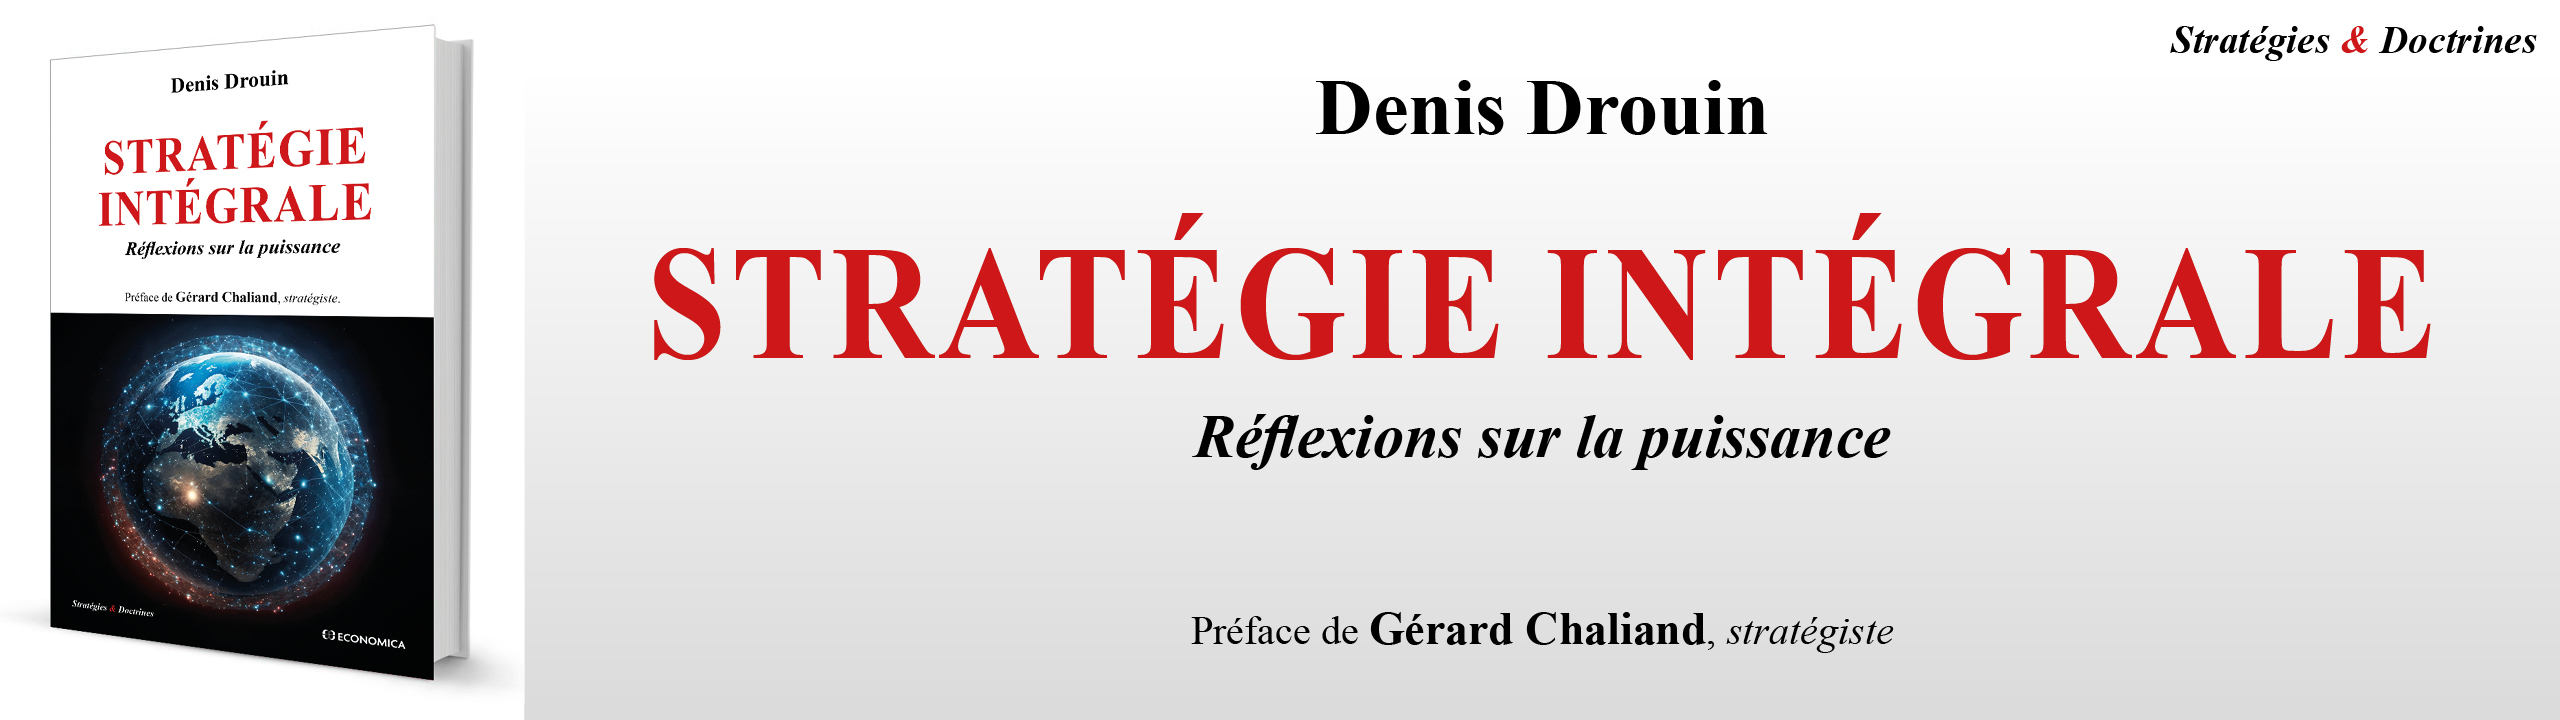 Stratégie intégrale - Réflexions sur la puissance - Denis Drouin - 9782717872750